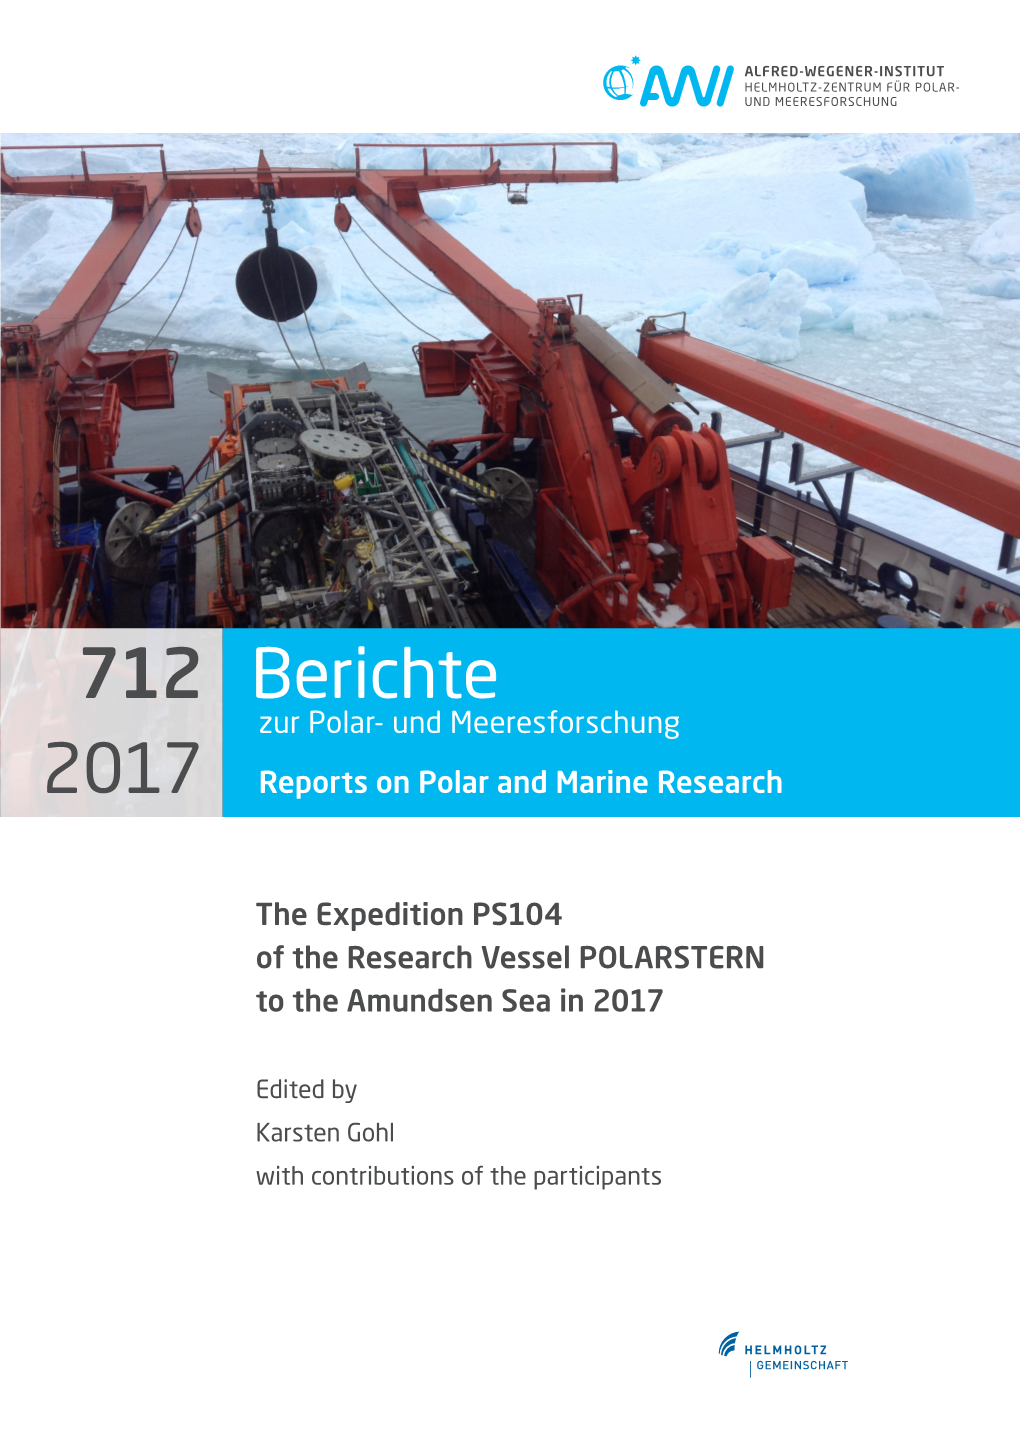 Berichte Zur Polar- Und Meeresforschung 2017 Reports on Polar and Marine Research